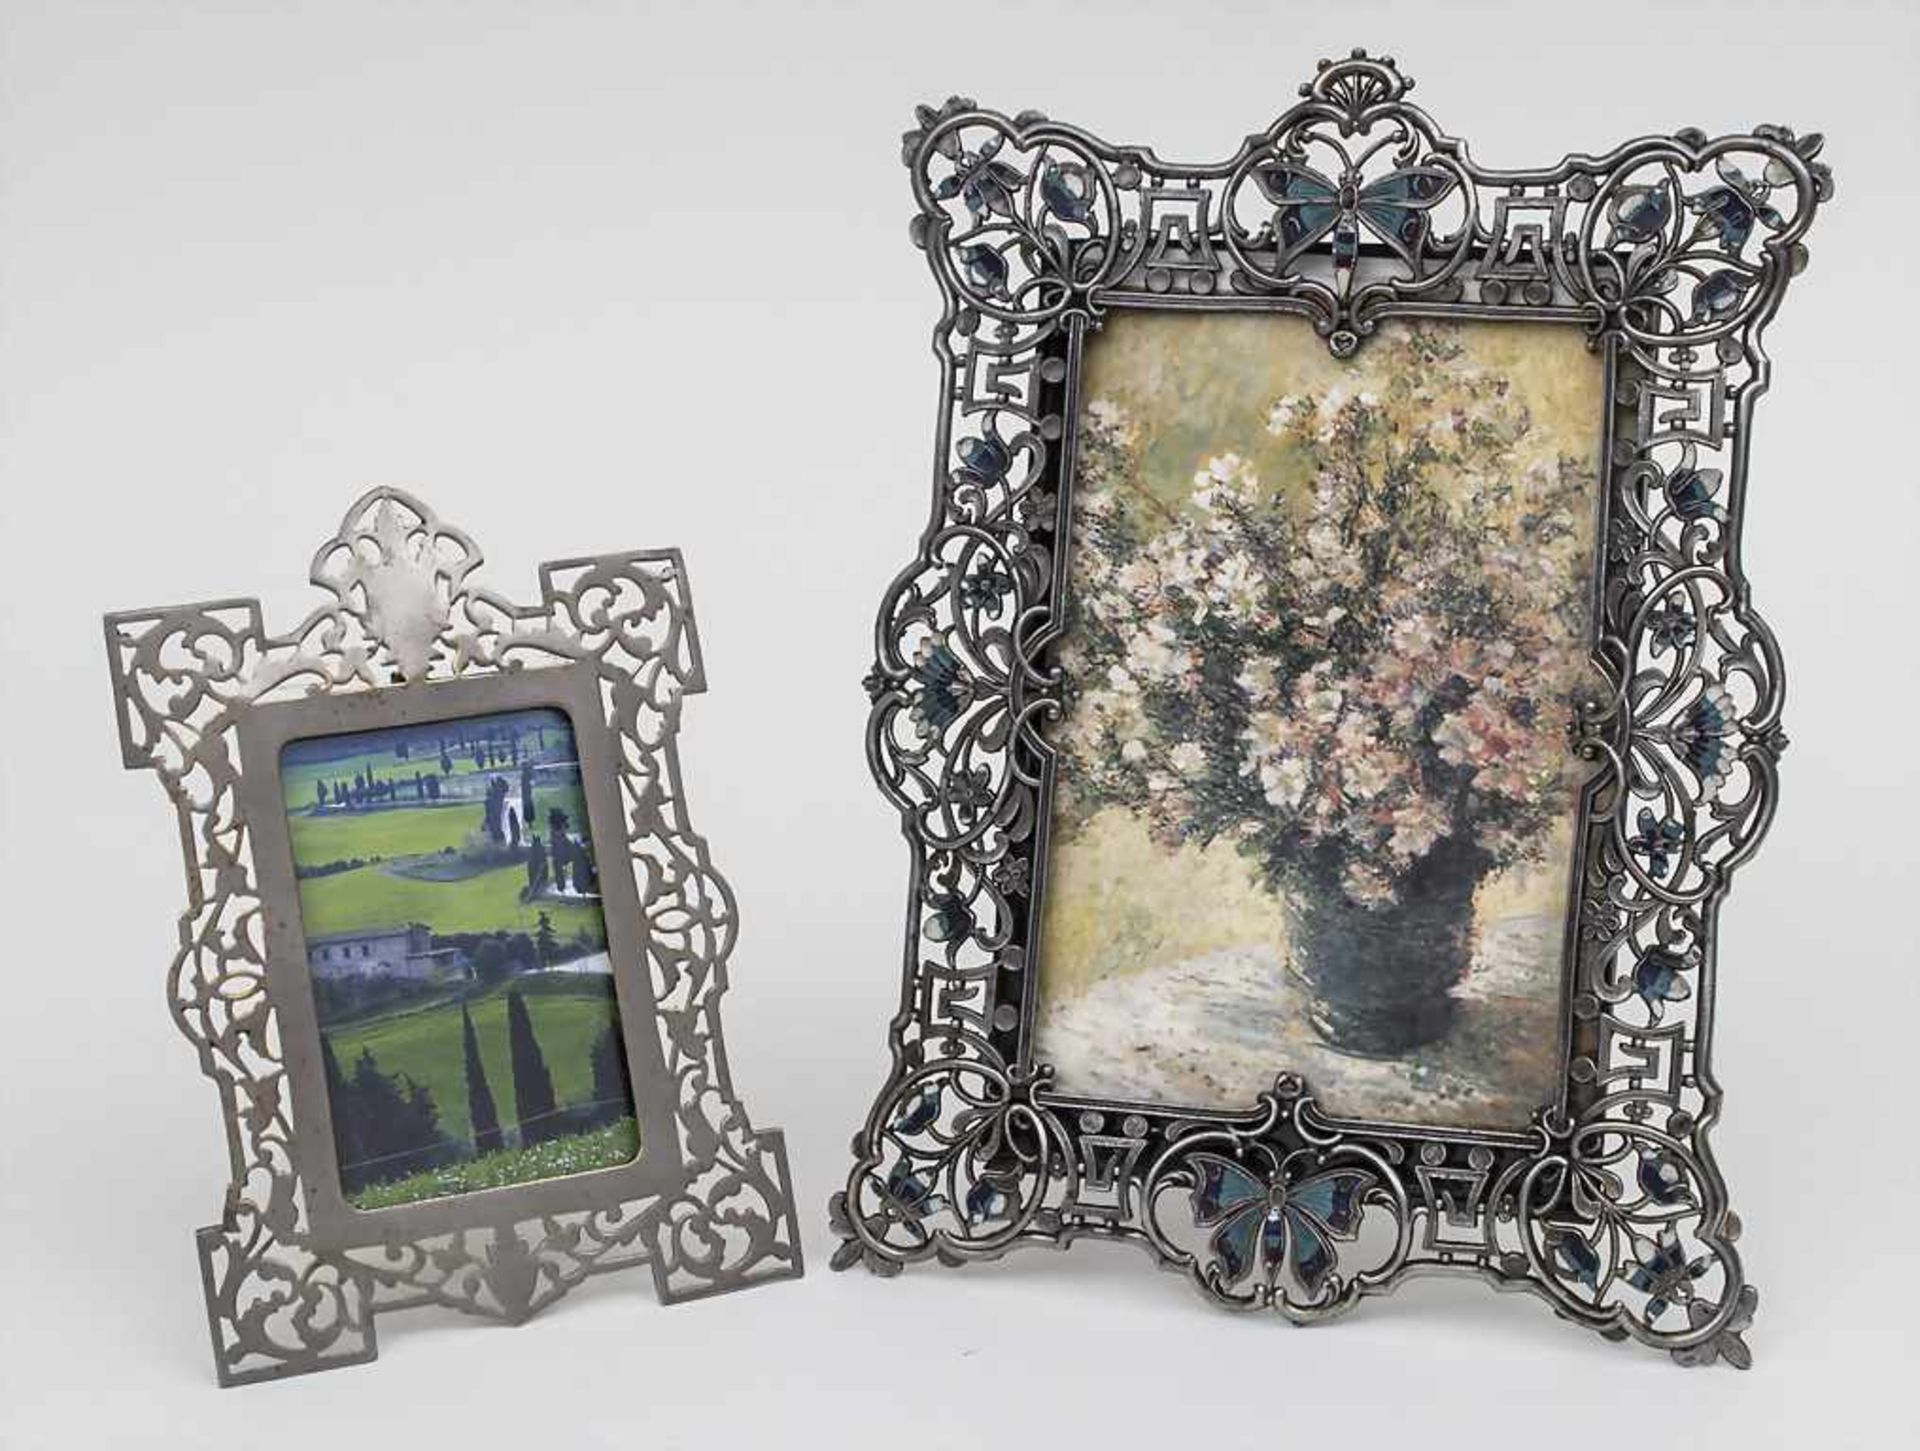 2 Jugendstil-Bilderrahmen / 2 Art Nouveau frames, um 1900 Material: Metall, versilbert, 1 Rahmen mit